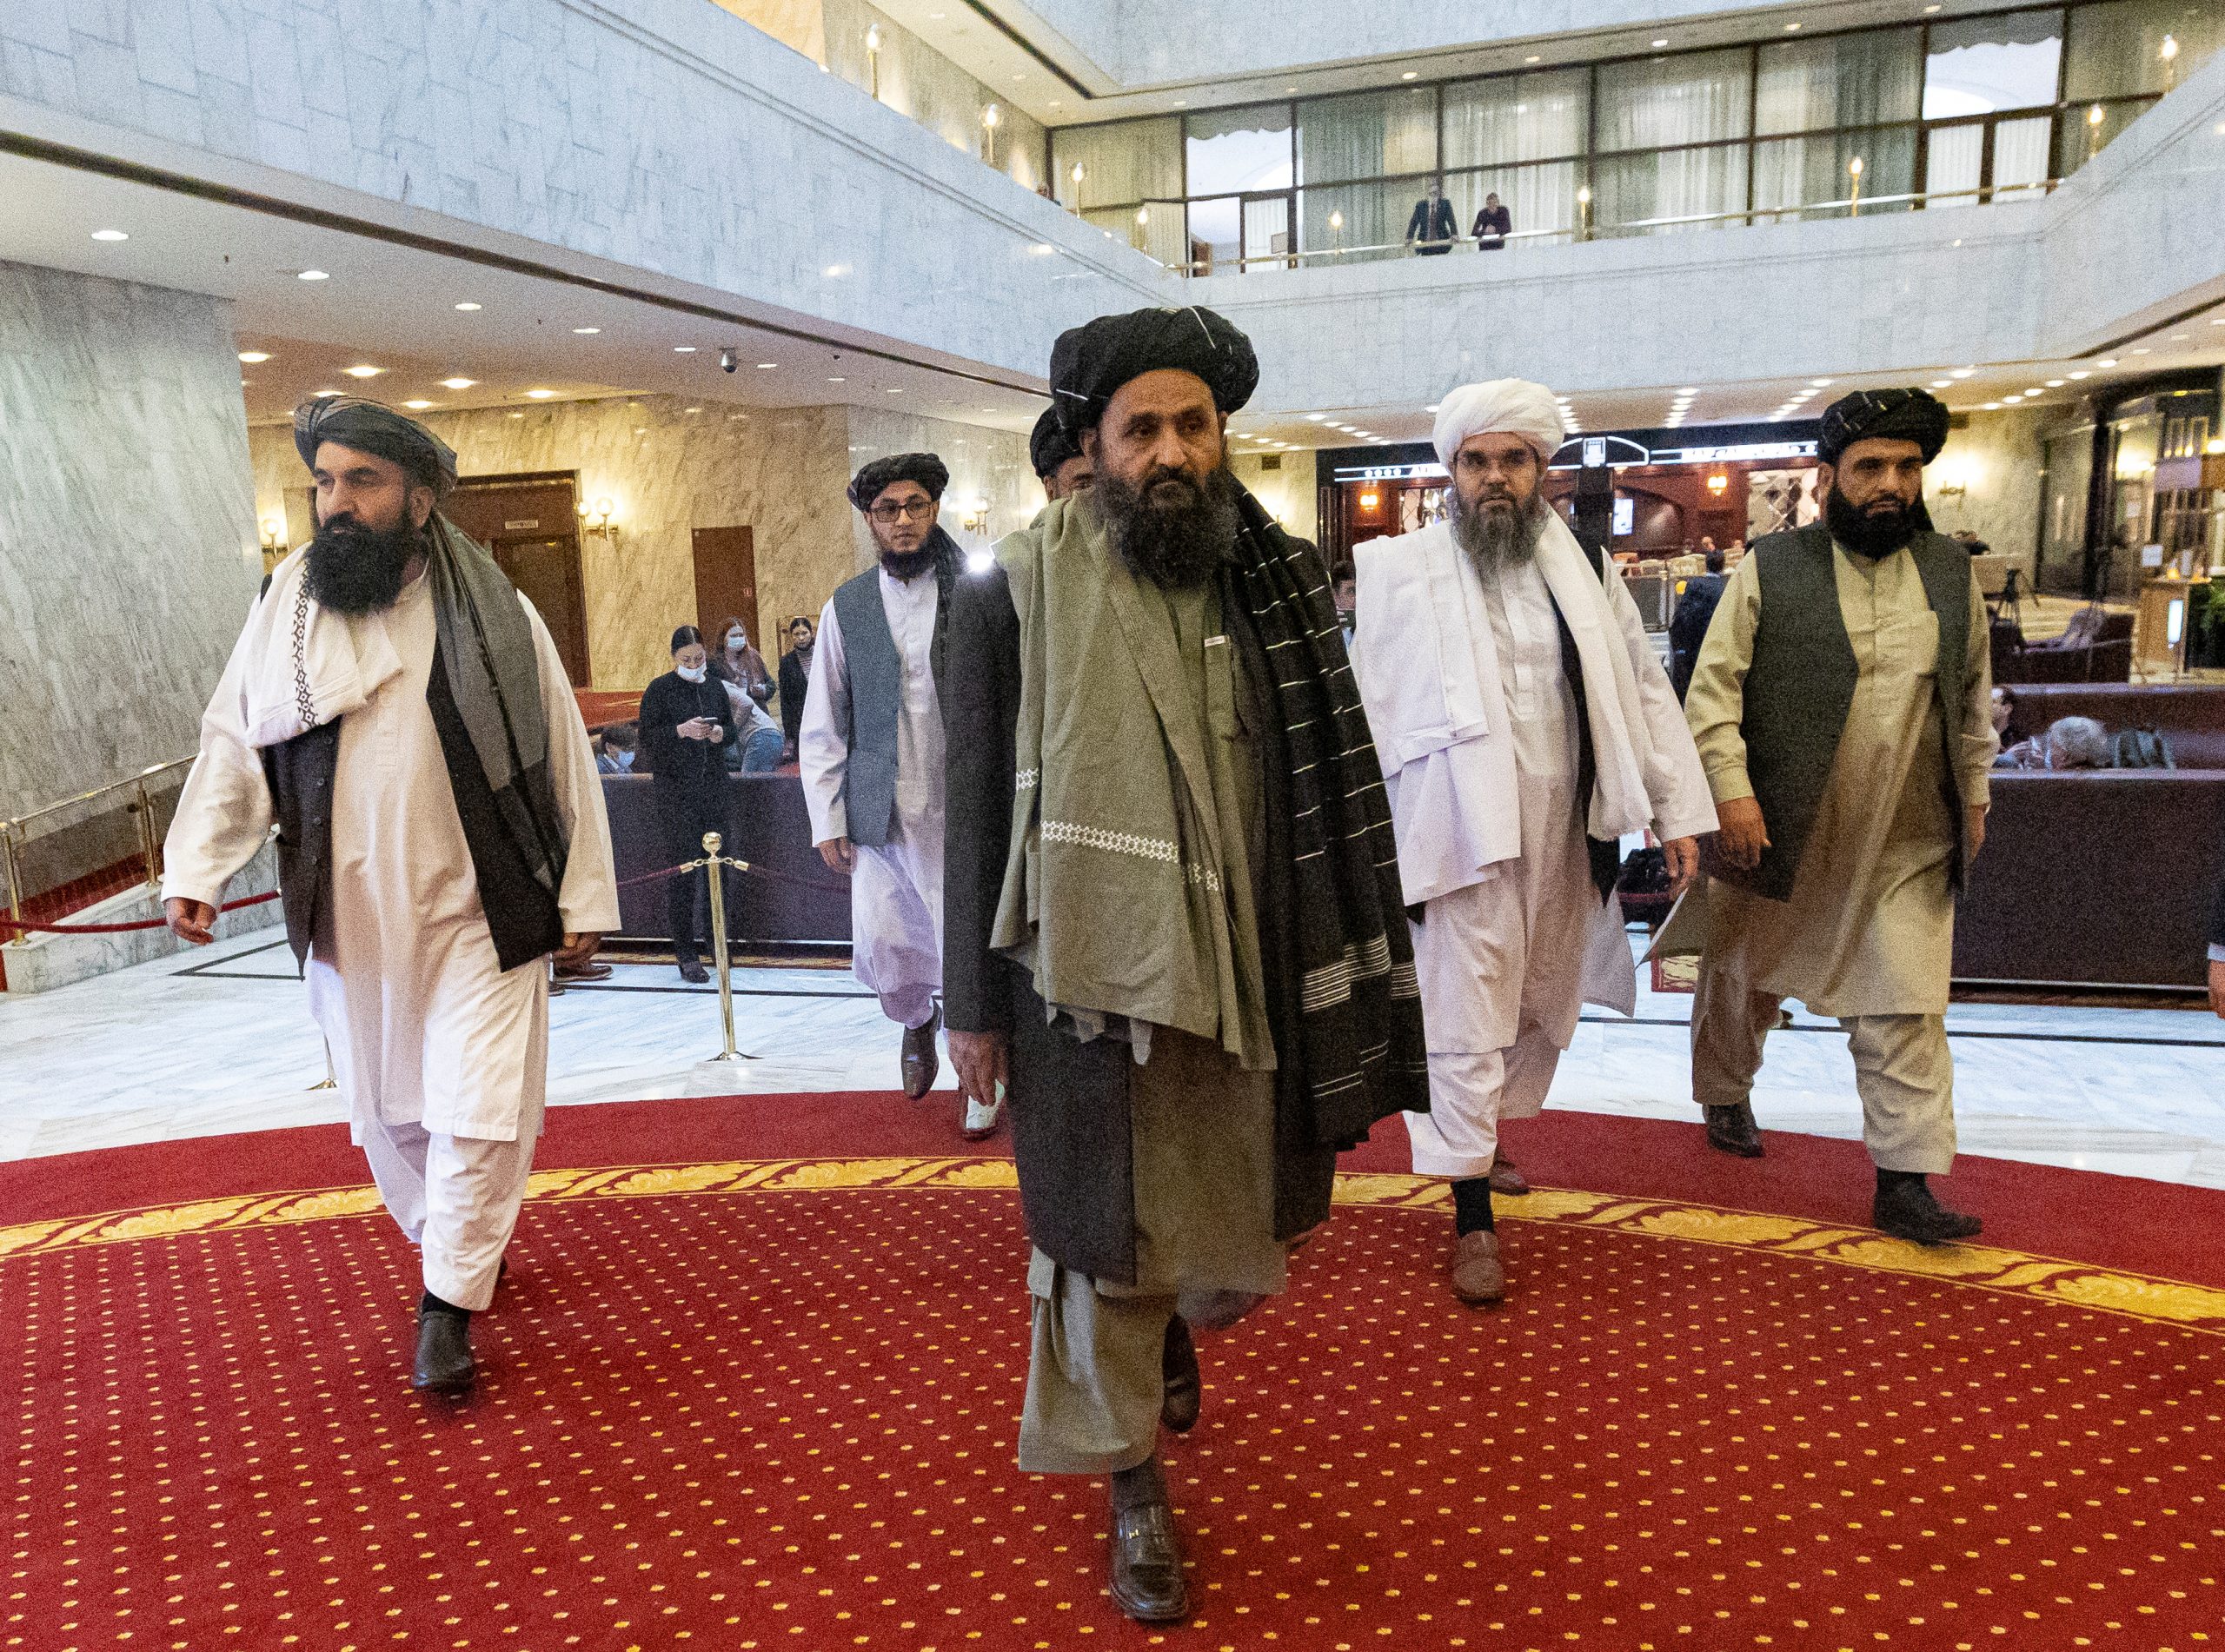 Πρώτη επίσκεψη αντιπροσωπείας των Ταλιμπάν στο Ιράν